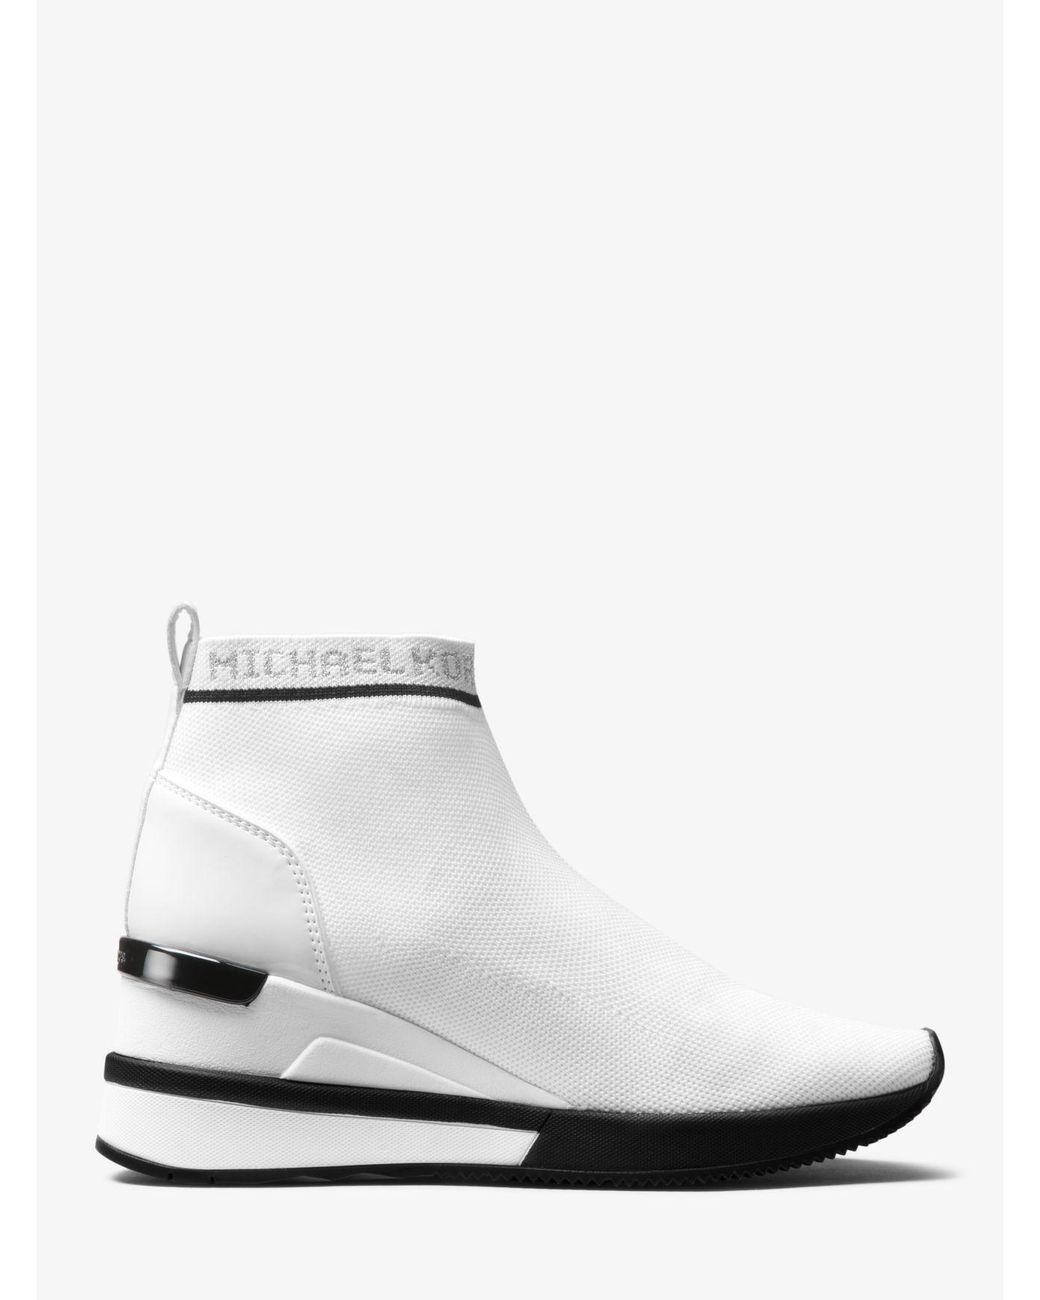 Michael Kors Skyler Logo Stretch-knit Sock Sneaker in White | Lyst